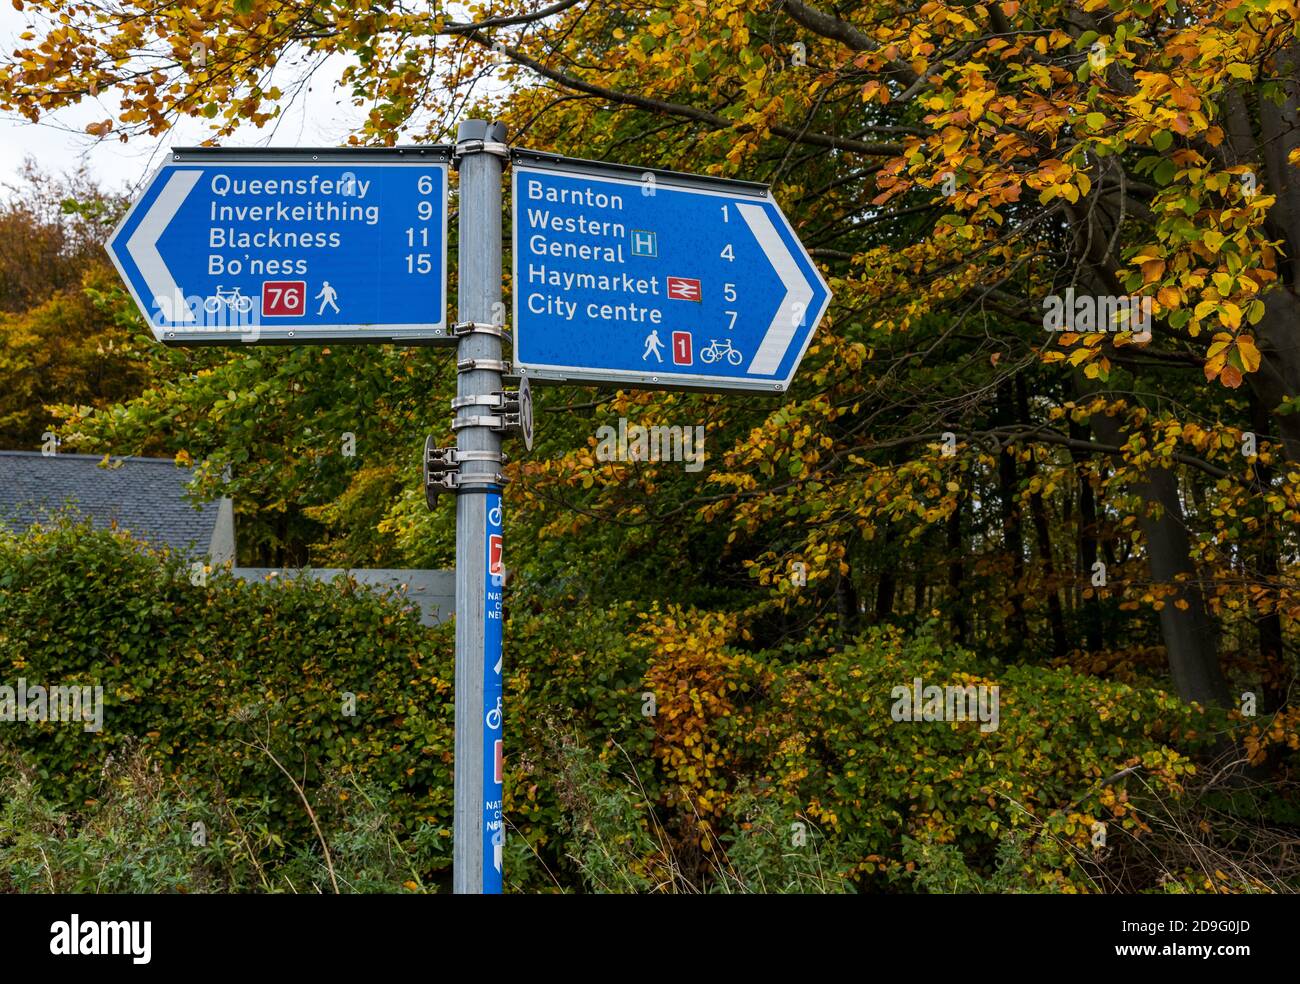 Wegweiser mit Wander- und Fahrradanweisungen für die Radroute 1 und 76 mit Herbstbäumen, Edinburgh, Schottland, Großbritannien Stockfoto